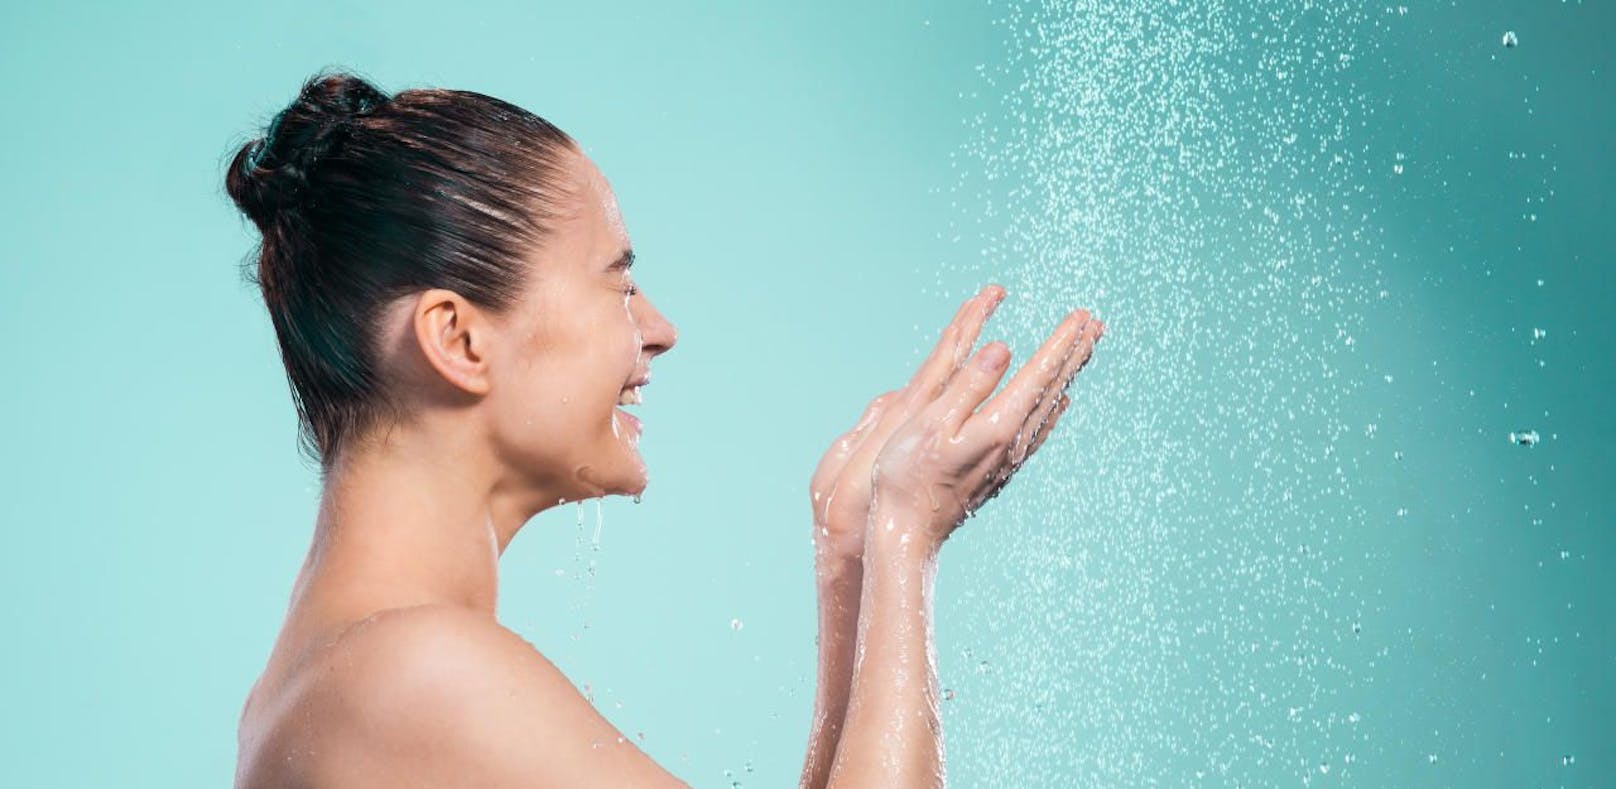 Baden sollte man vermeiden. Eine Dusche sollte nicht allzu lange dauern, um die Fettschicht nicht empfindlich zu stören.&nbsp;